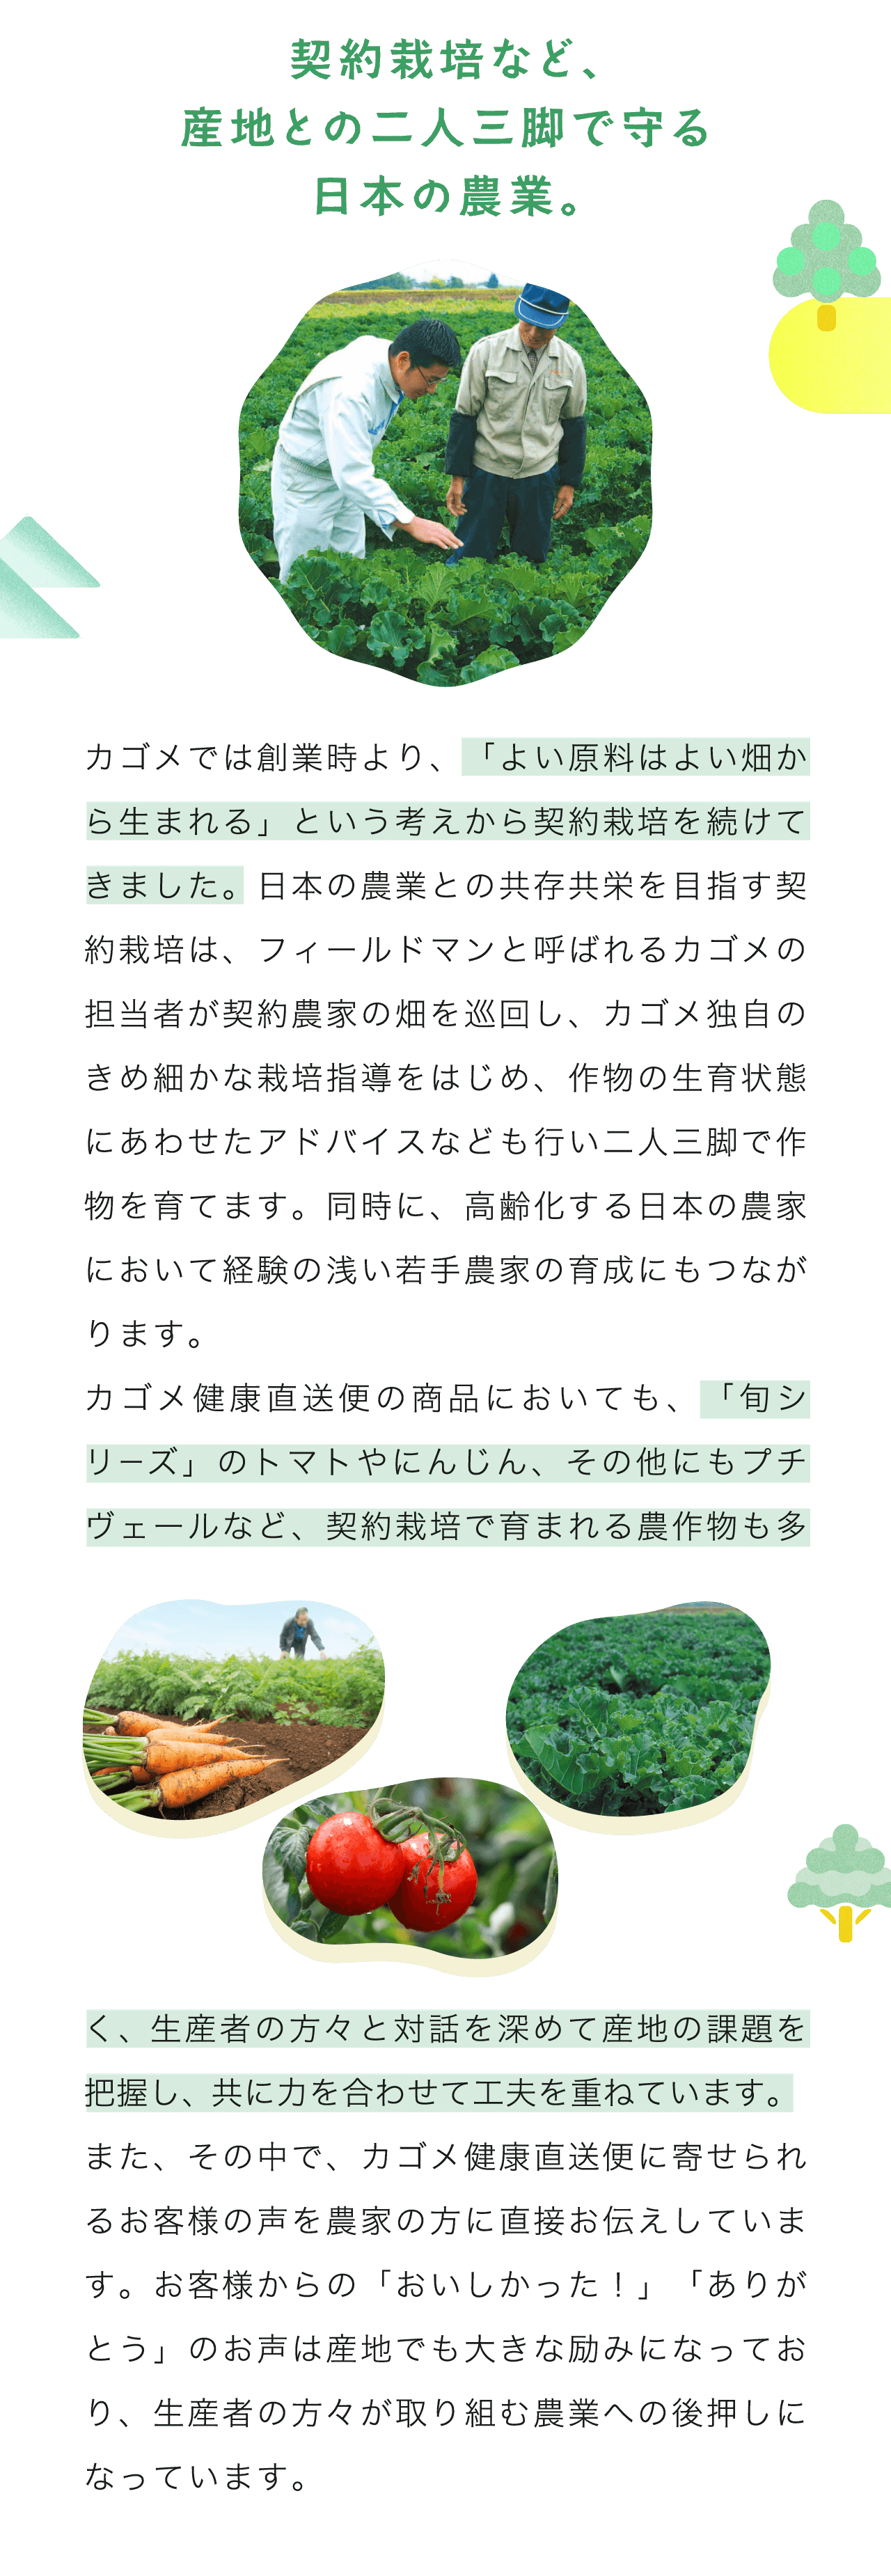 契約栽培など、産地との二人三脚で守る日本の農業。